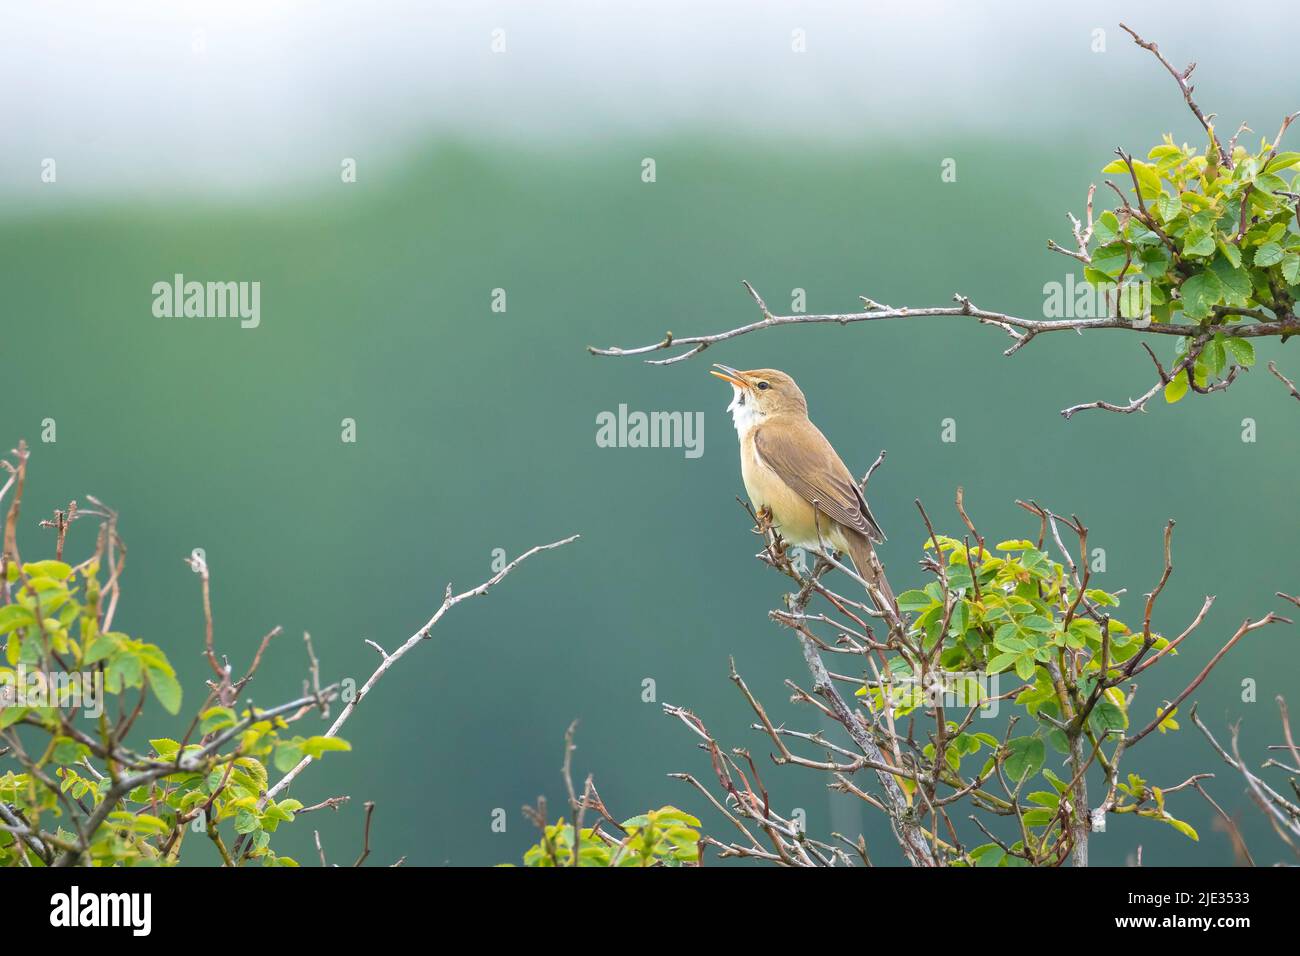 Palustris di palude, Acrocephalus, uccello che cantano in un campo con fiori gialli Foto Stock